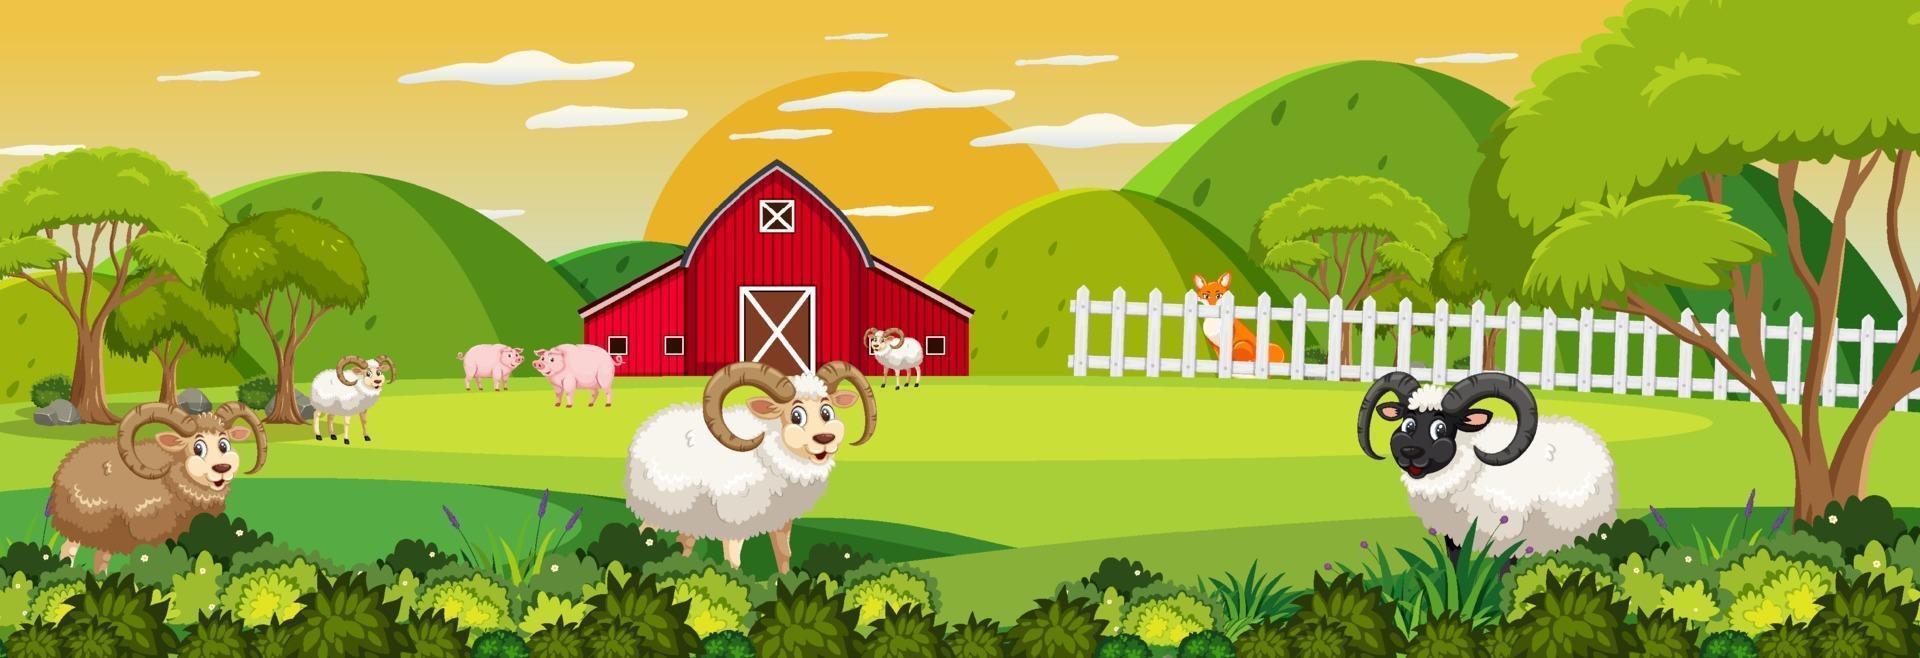 boerderij horizontale landschapsscène met veel schapen vector